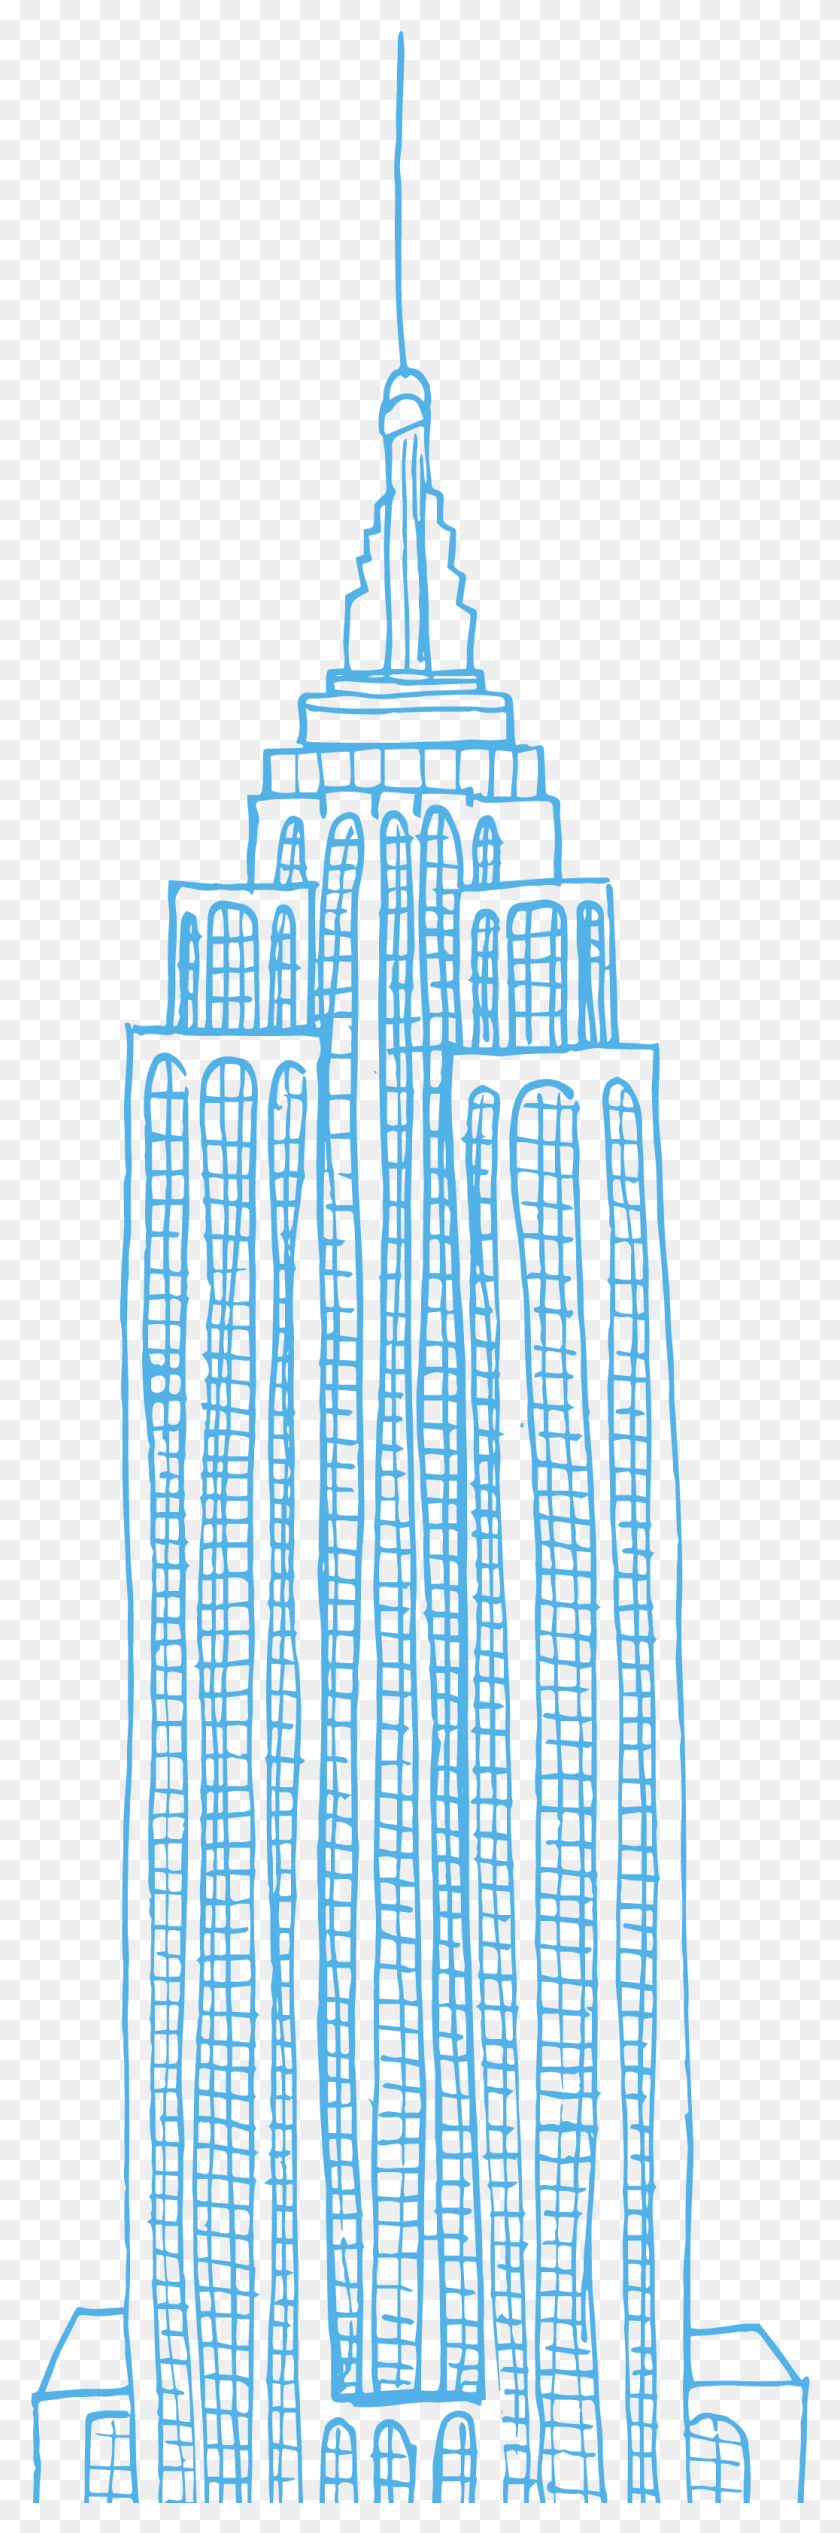 1037x3289 El Empire State Building Es Un Rascacielos De 102 Pisos, Ciudad, Urban, Ciudad Hd Png